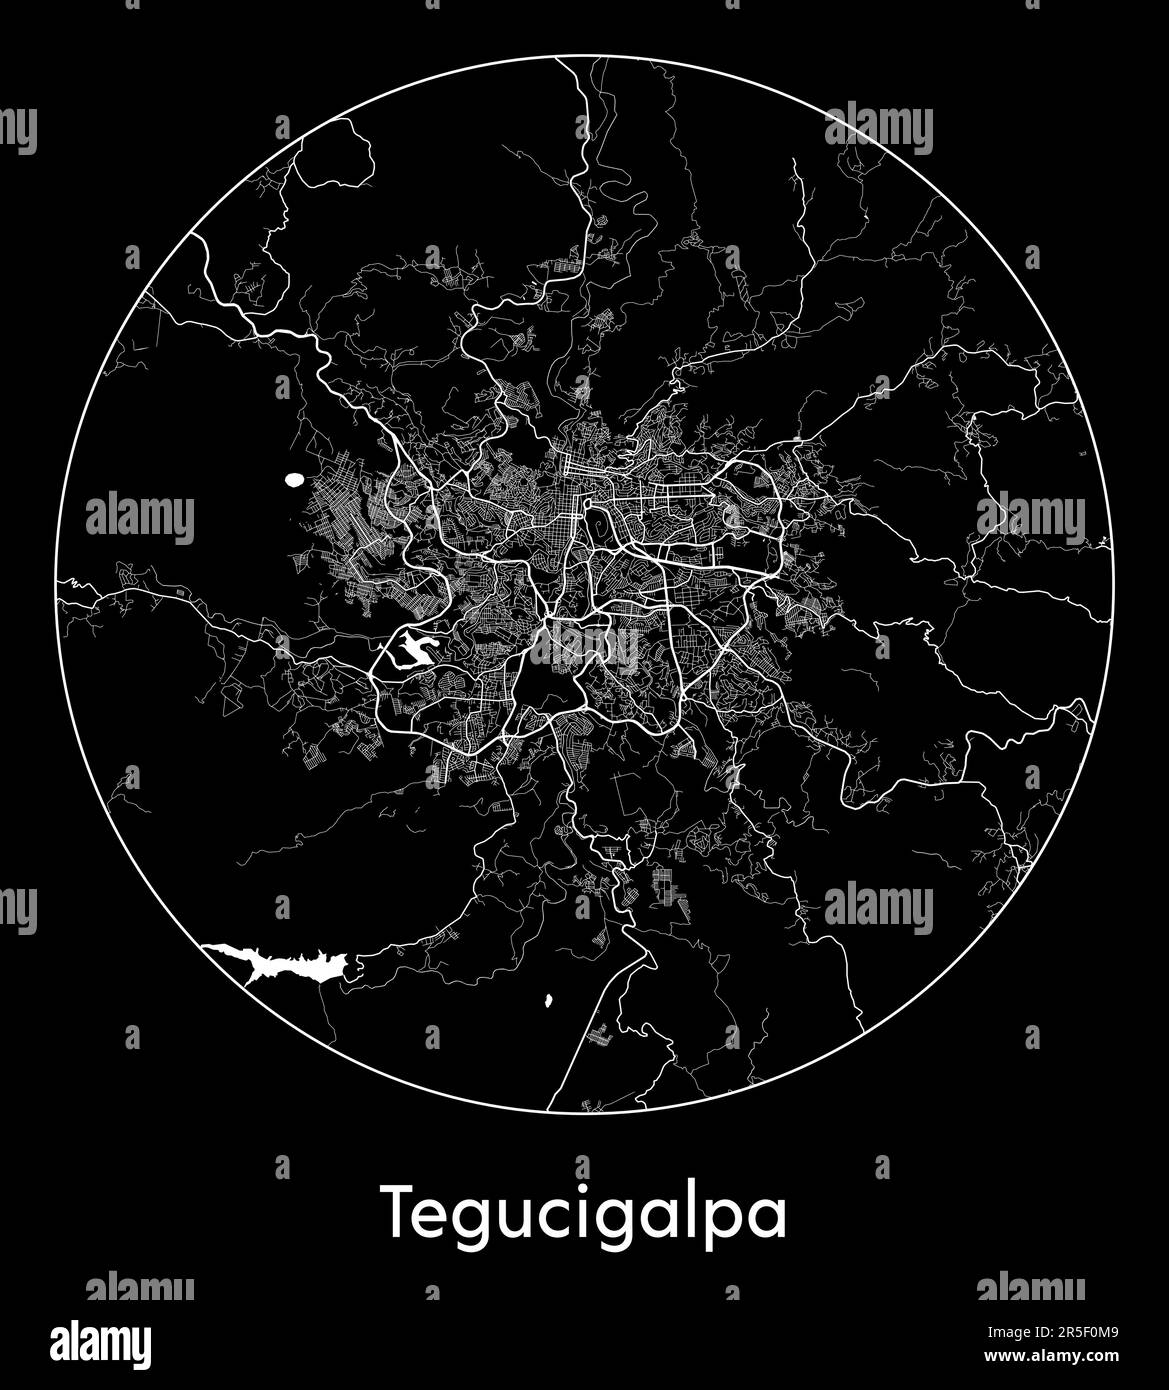 City Map Tegucigalpa Honduras North America vector illustration Stock Vector